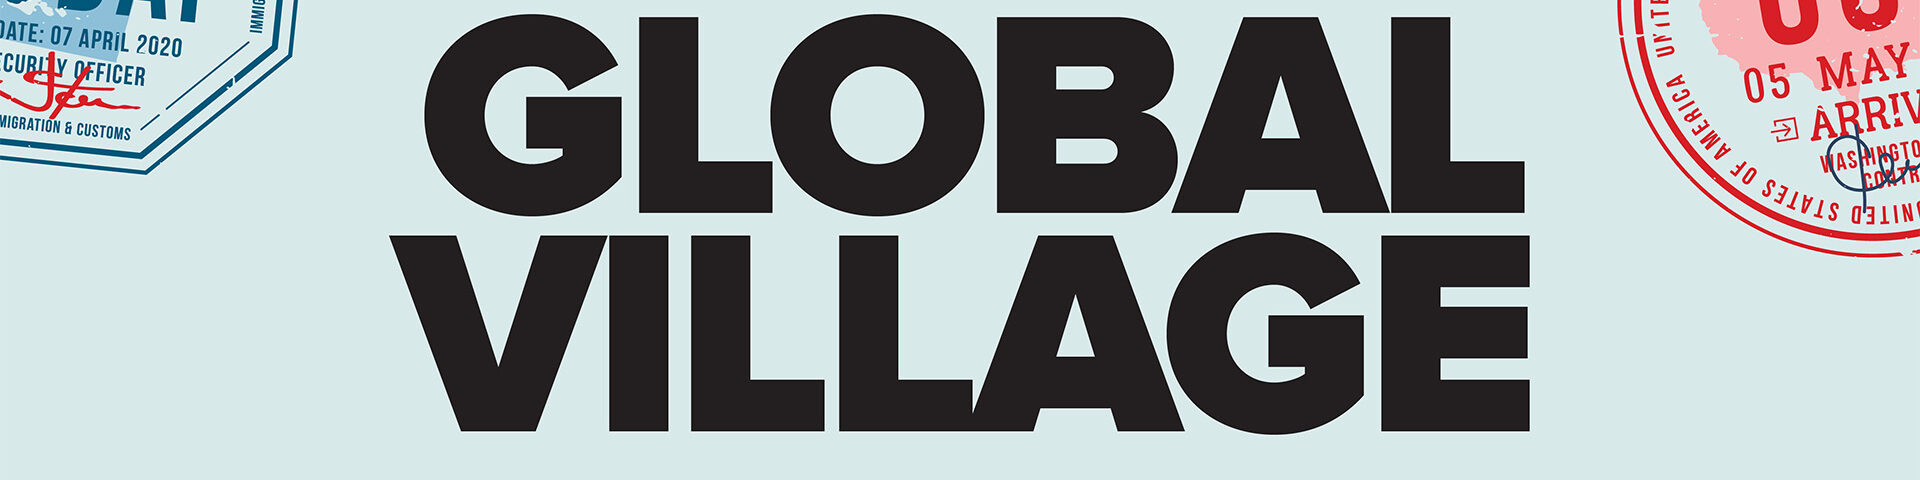 Visit us at the Global Village